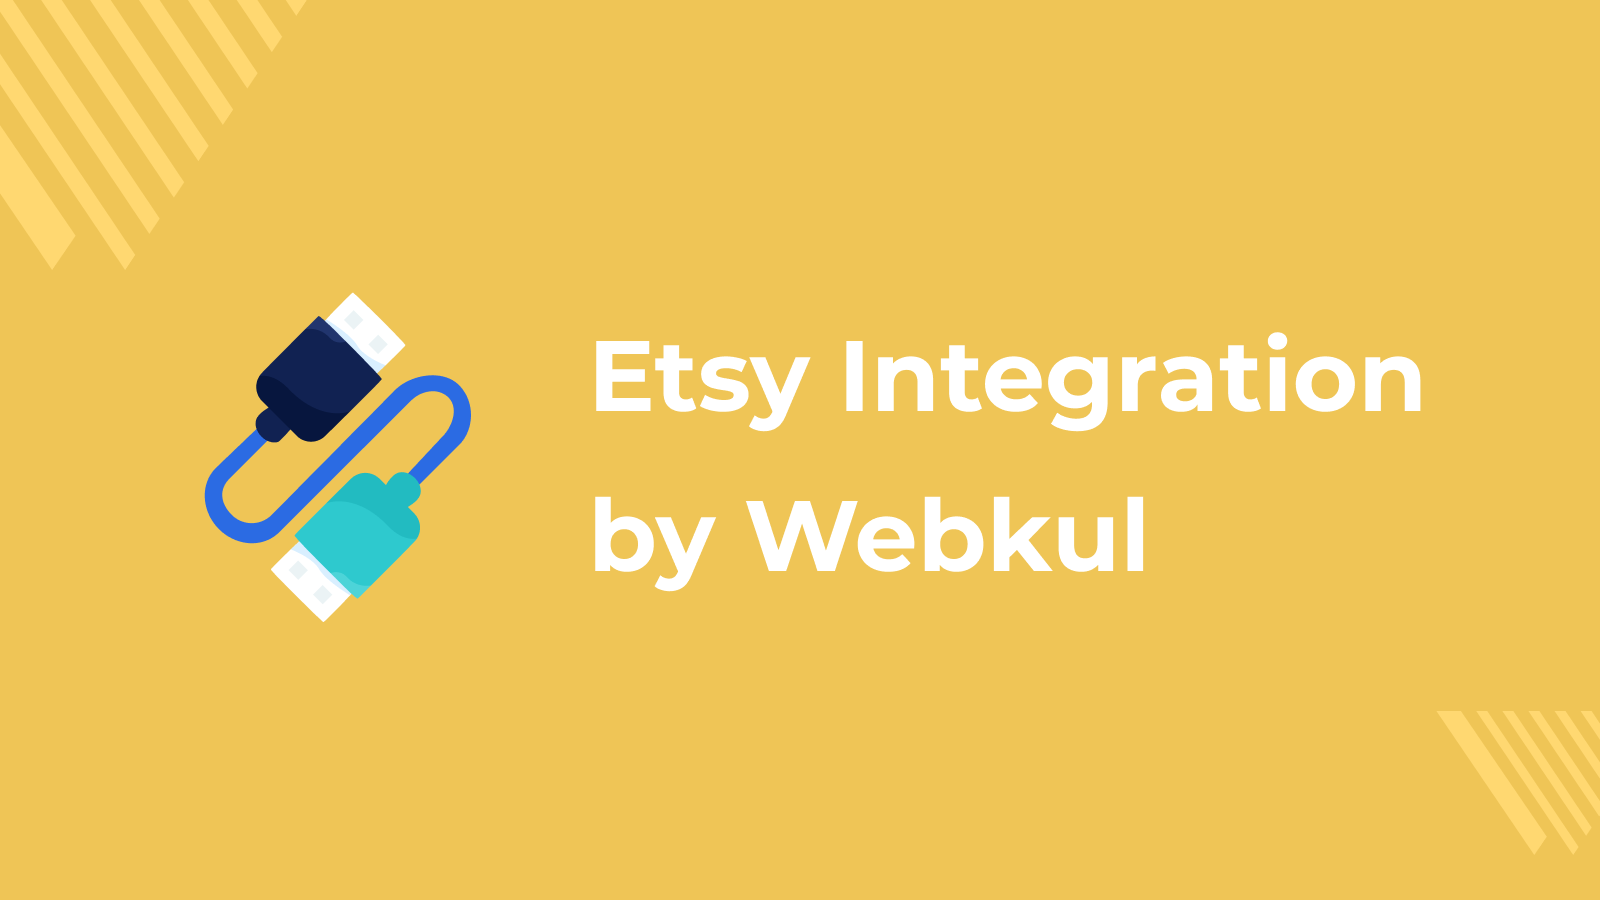 Etsy integration af webkul 